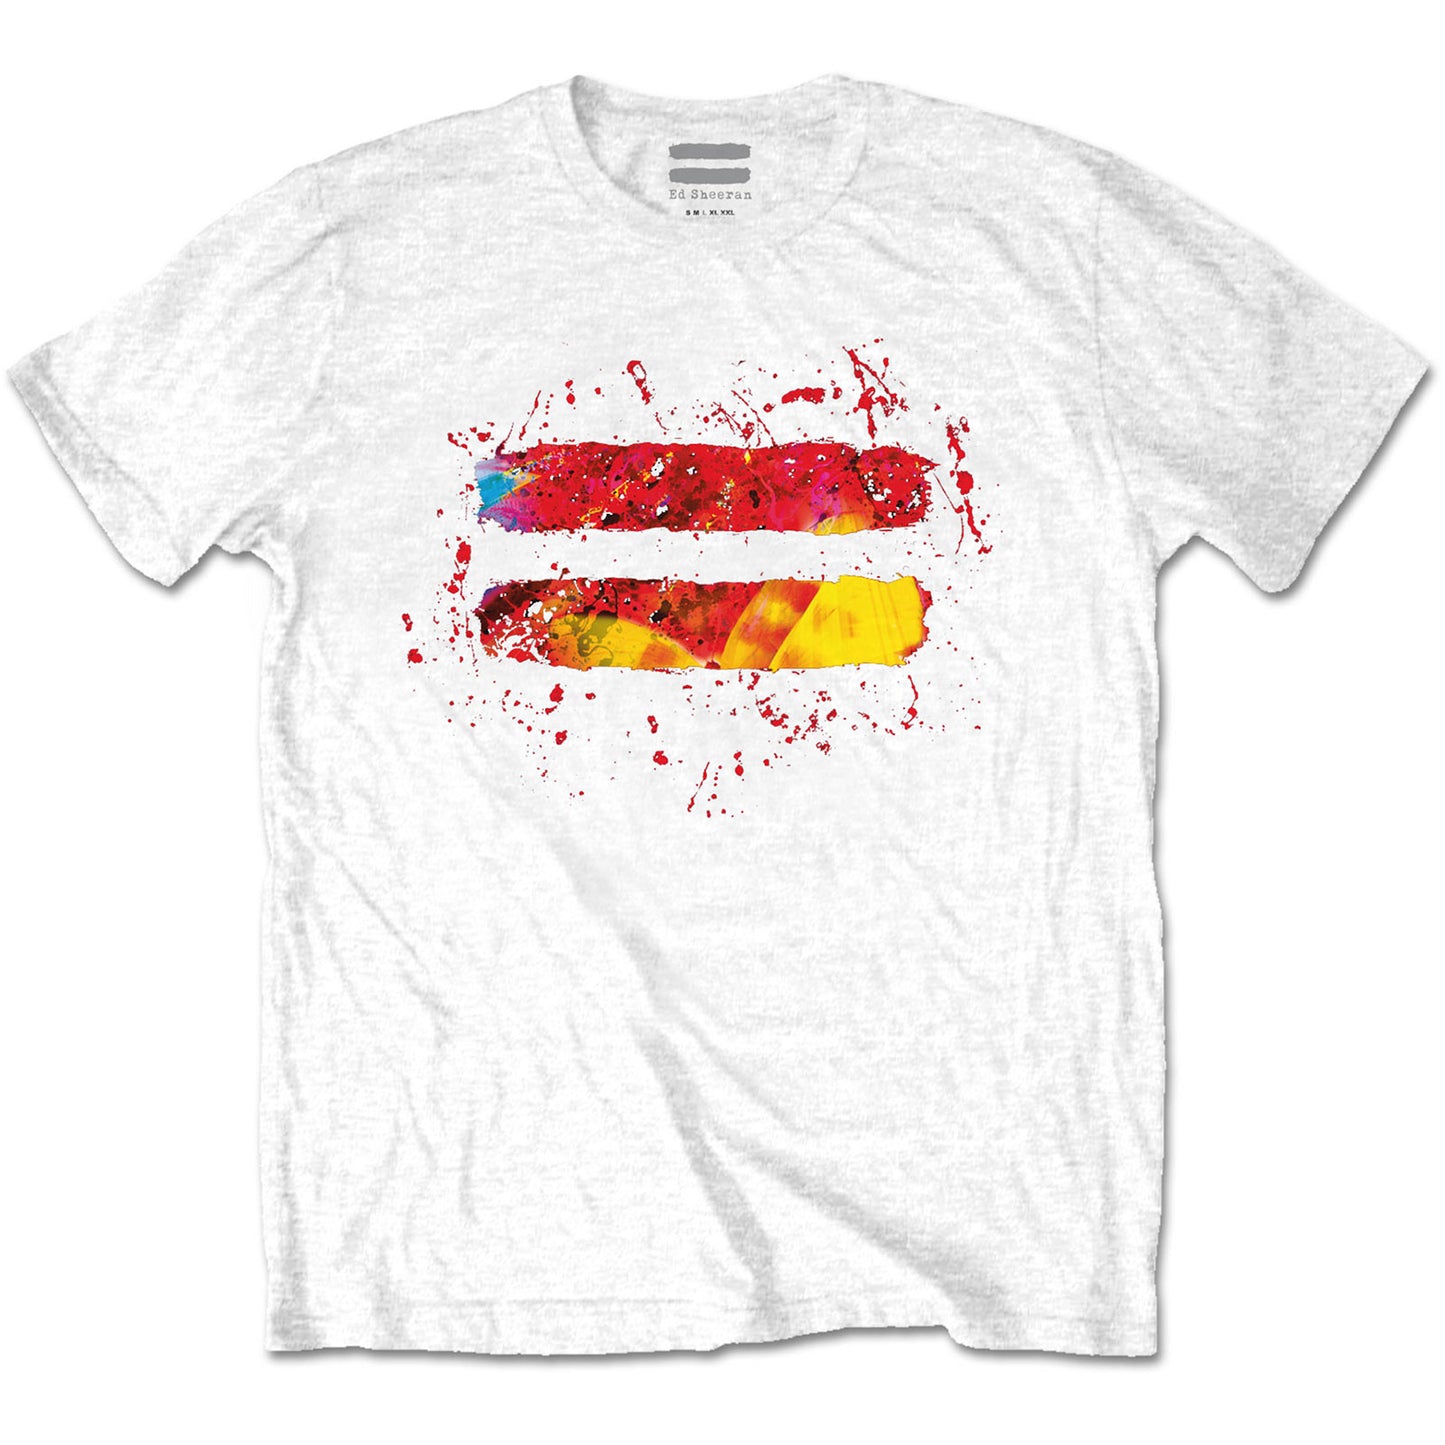 Ed Sheeran T-Shirt: Equals